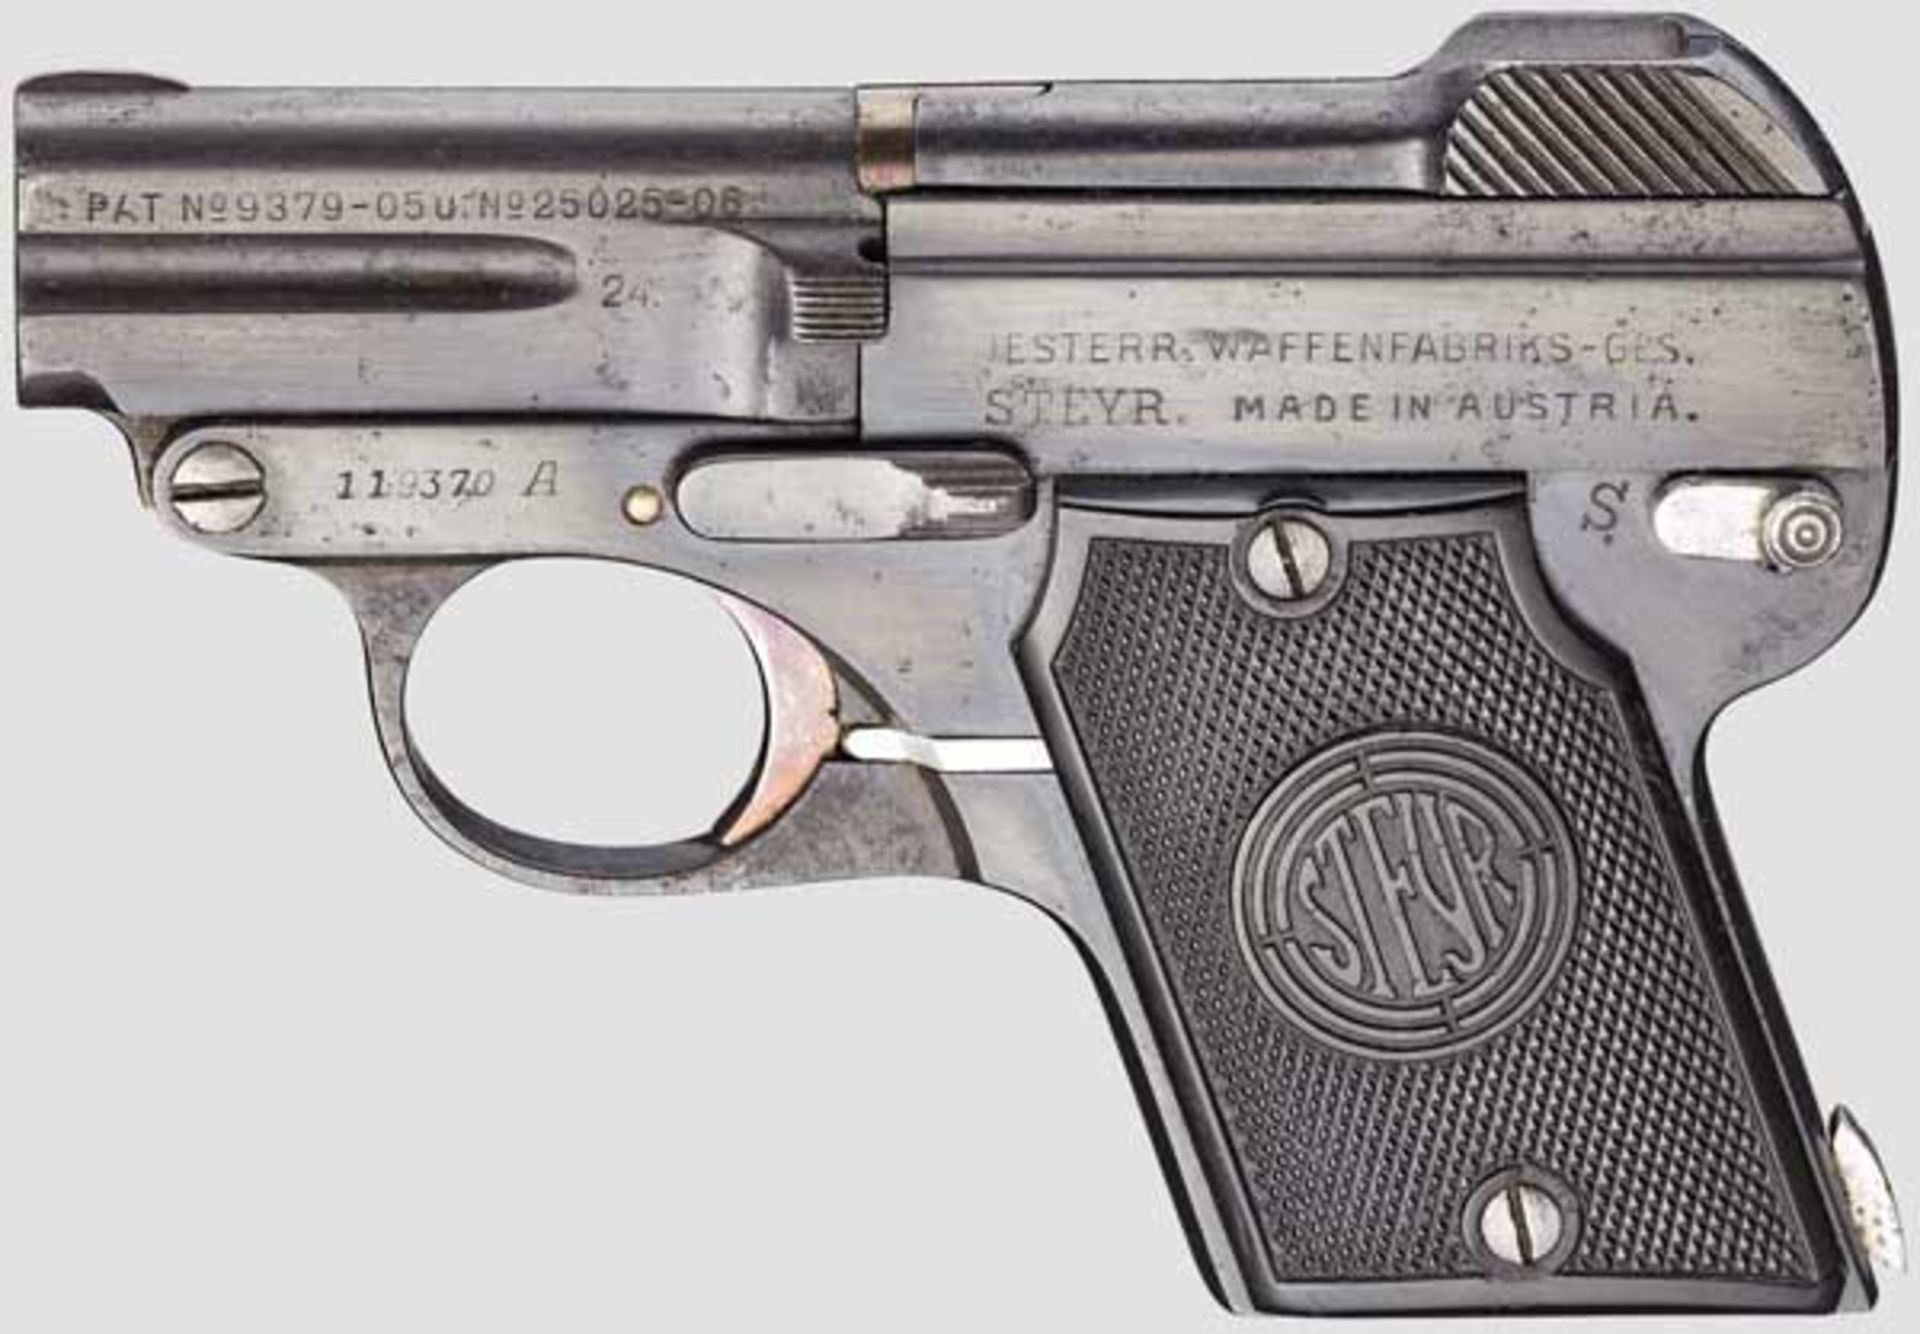 Steyr Mod. 09 Kal. 6,35 mm, Nr. 119370A. Nummerngleich. Lauf matt. Sechsschüssig. Beschuss 1924.